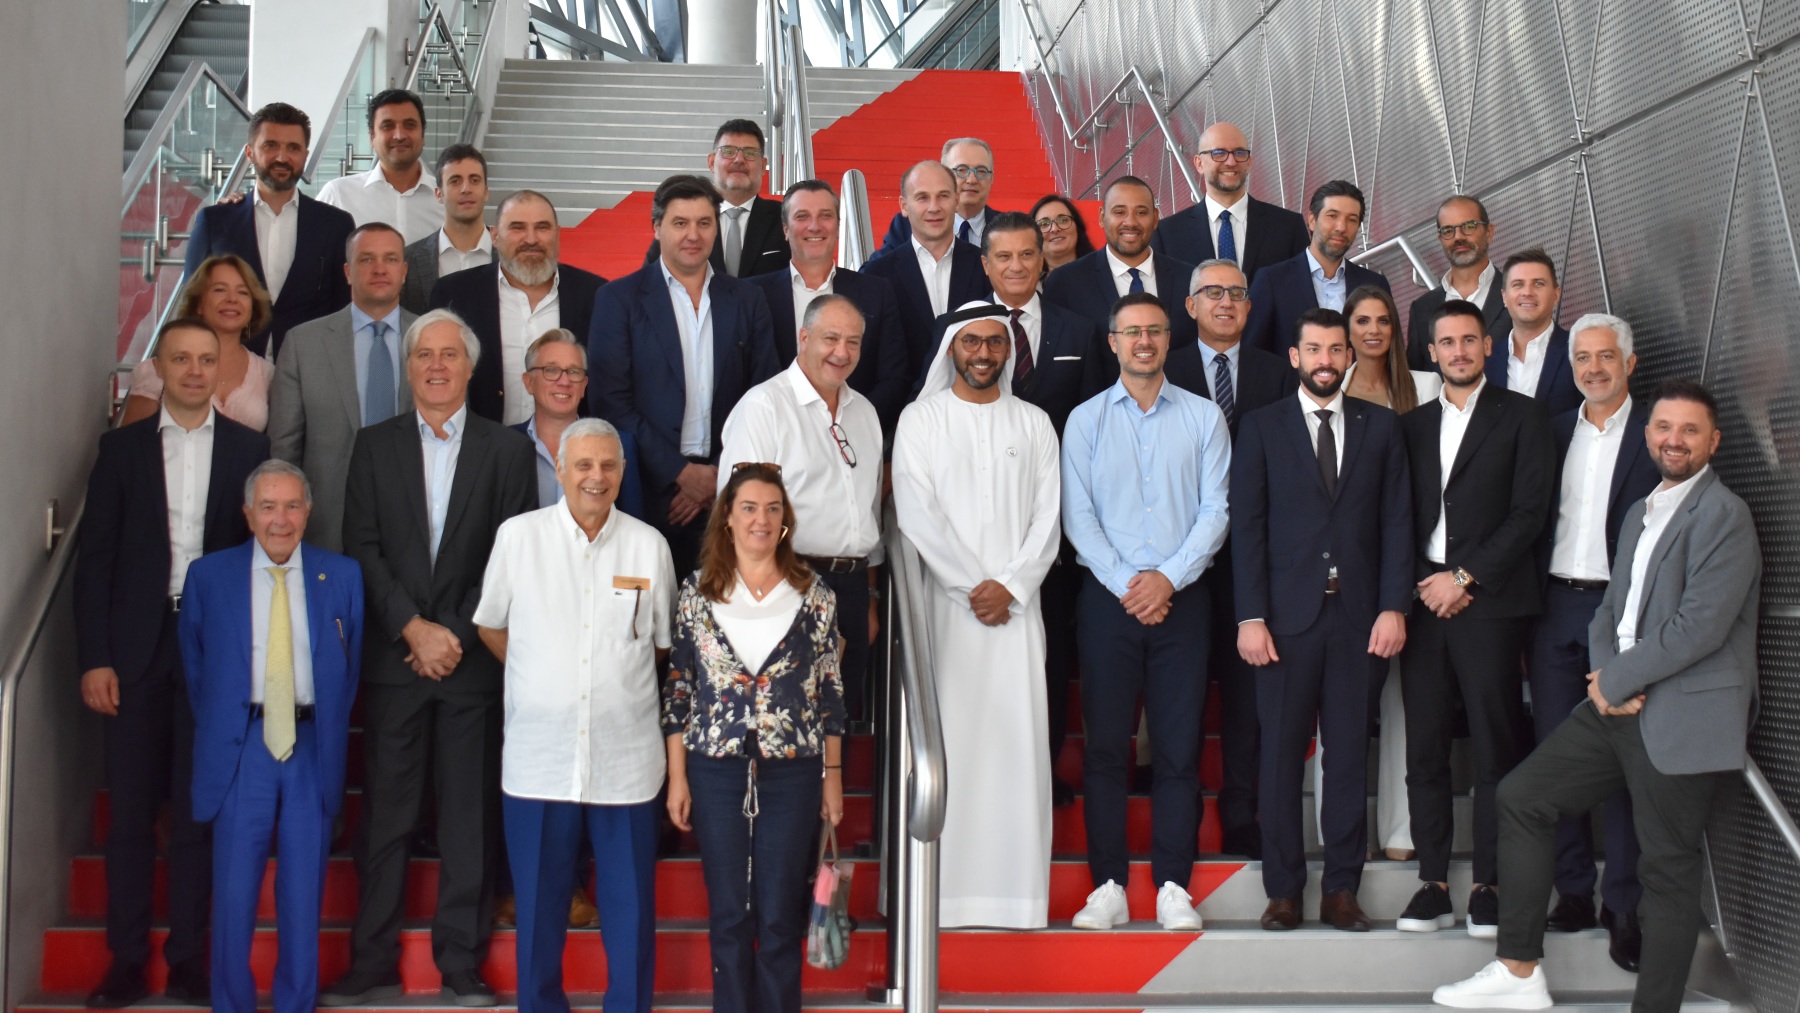 Reunión entre la Euroliga y los representantes de Dubái. (Euroleague)